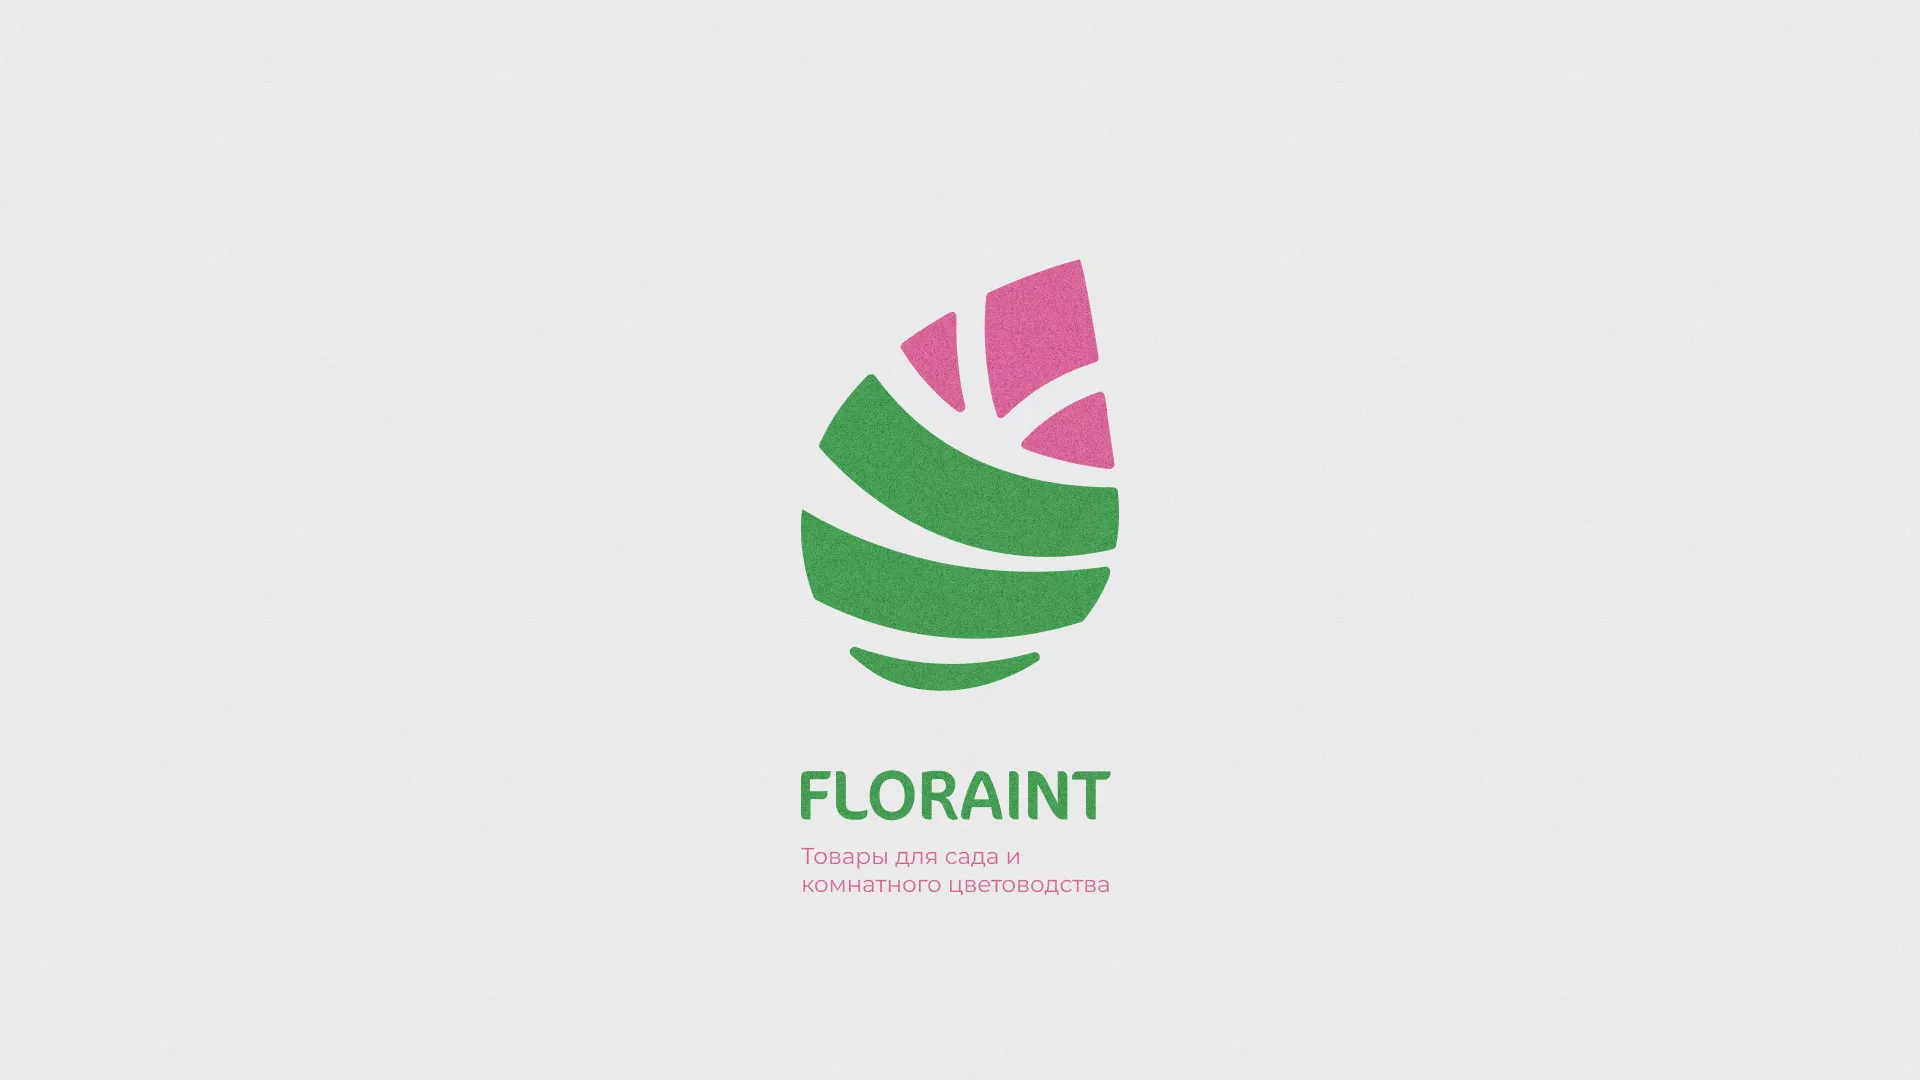 Разработка оформления профиля Instagram для магазина «Floraint» в Бежецке